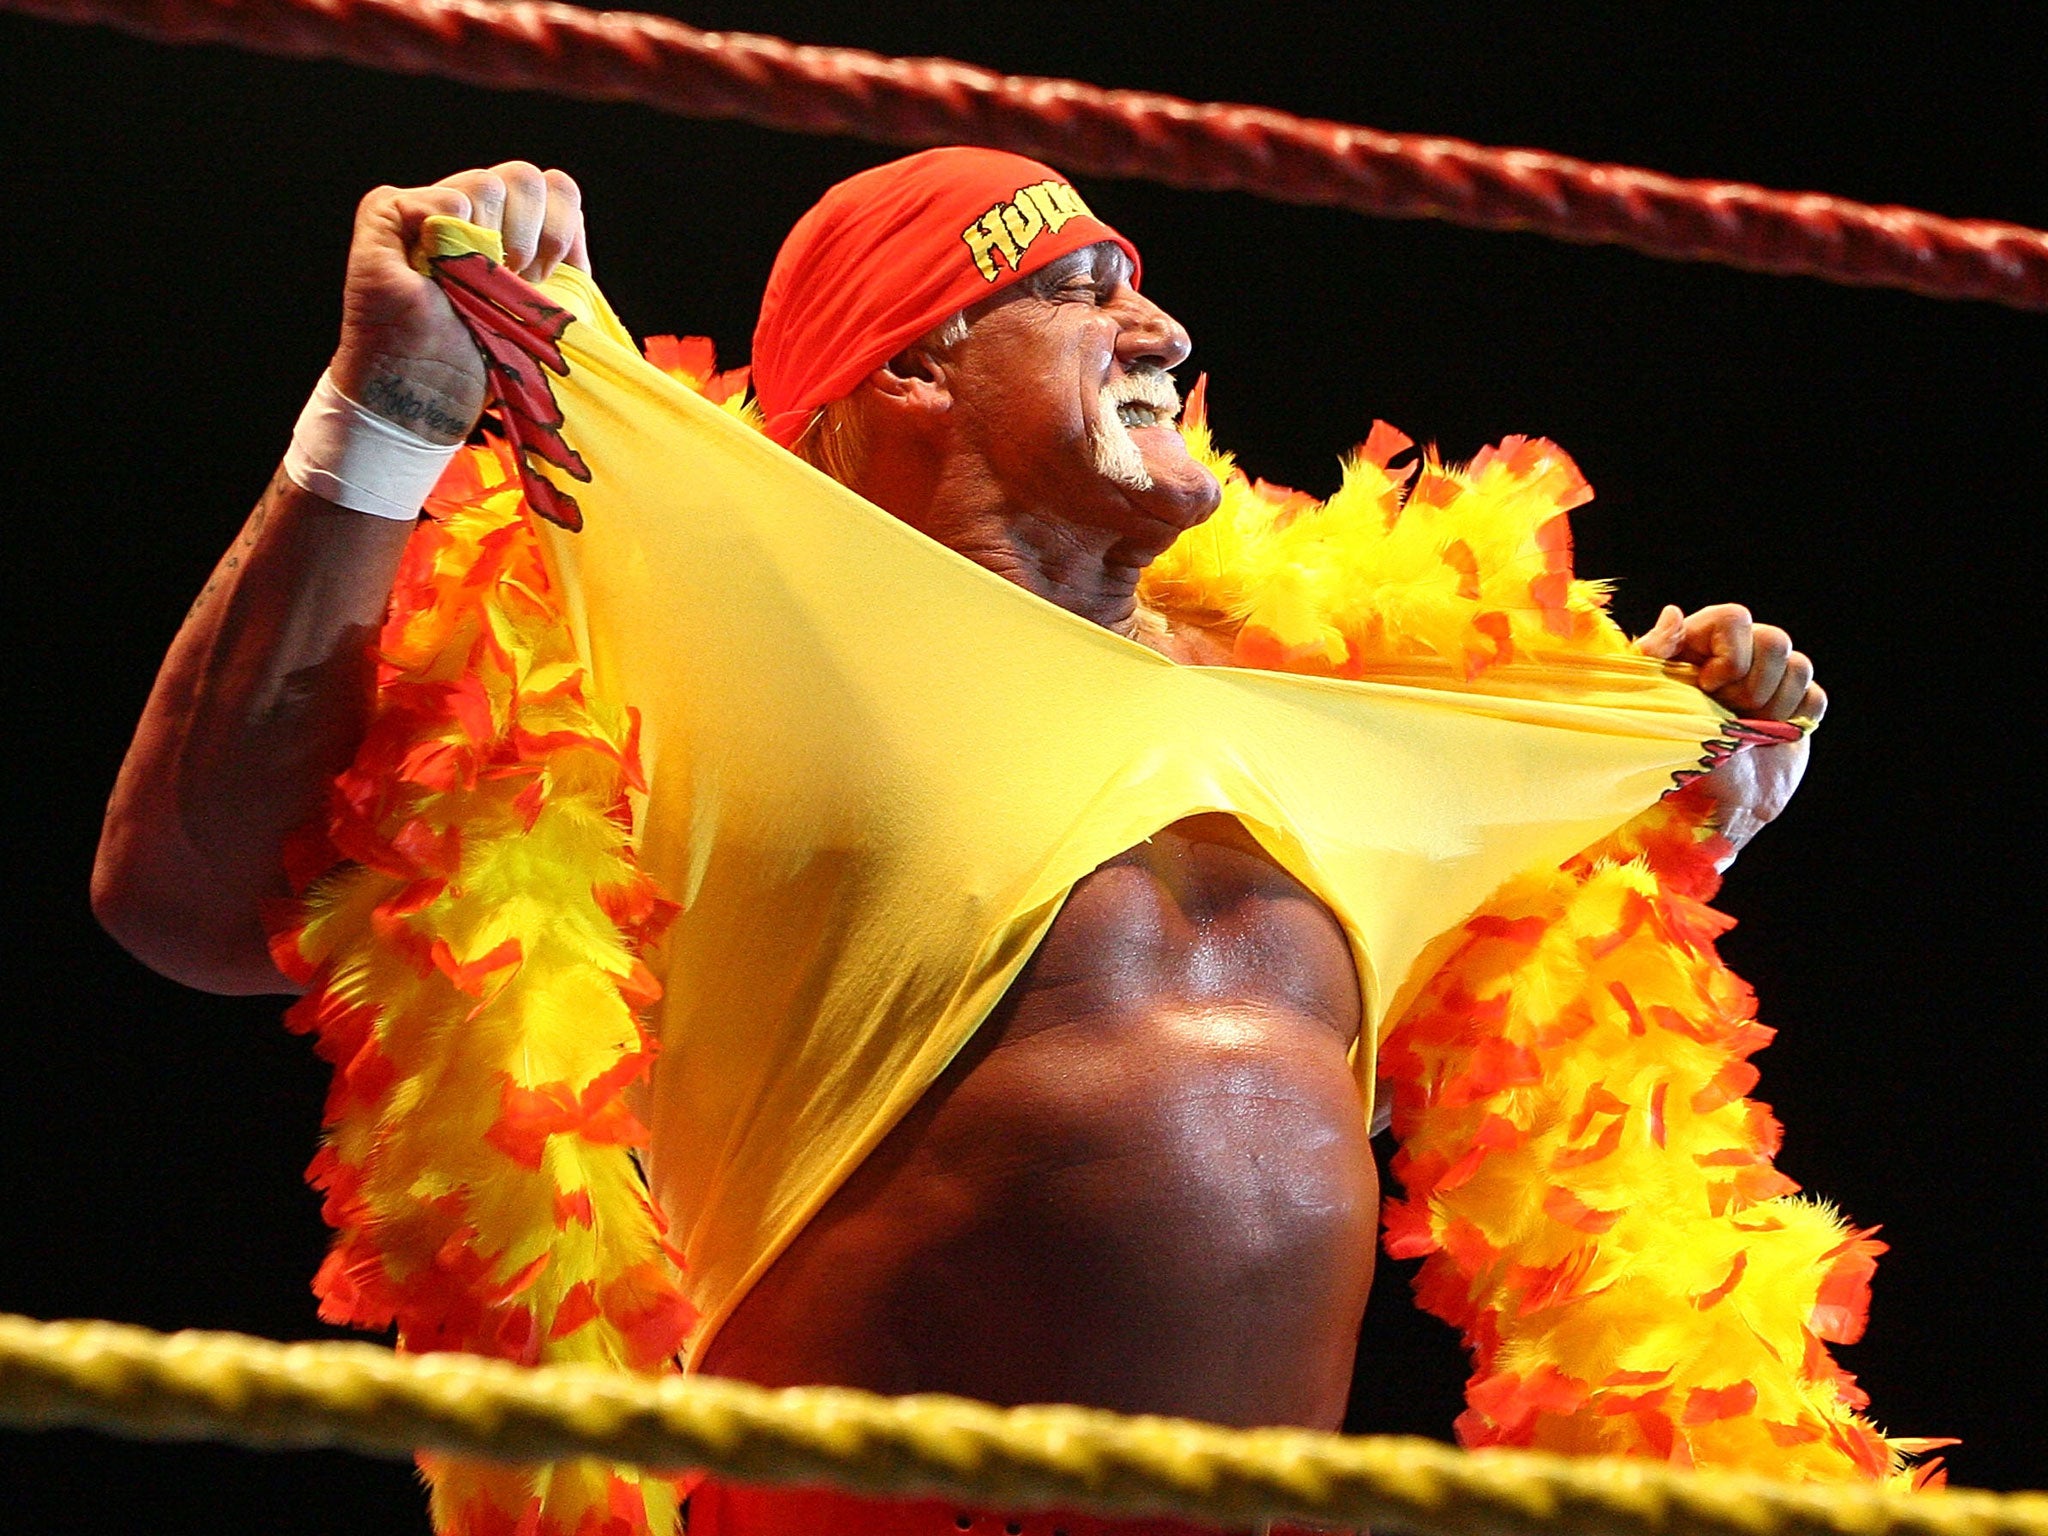 Hulk Hogan will host Wrestlemania 30